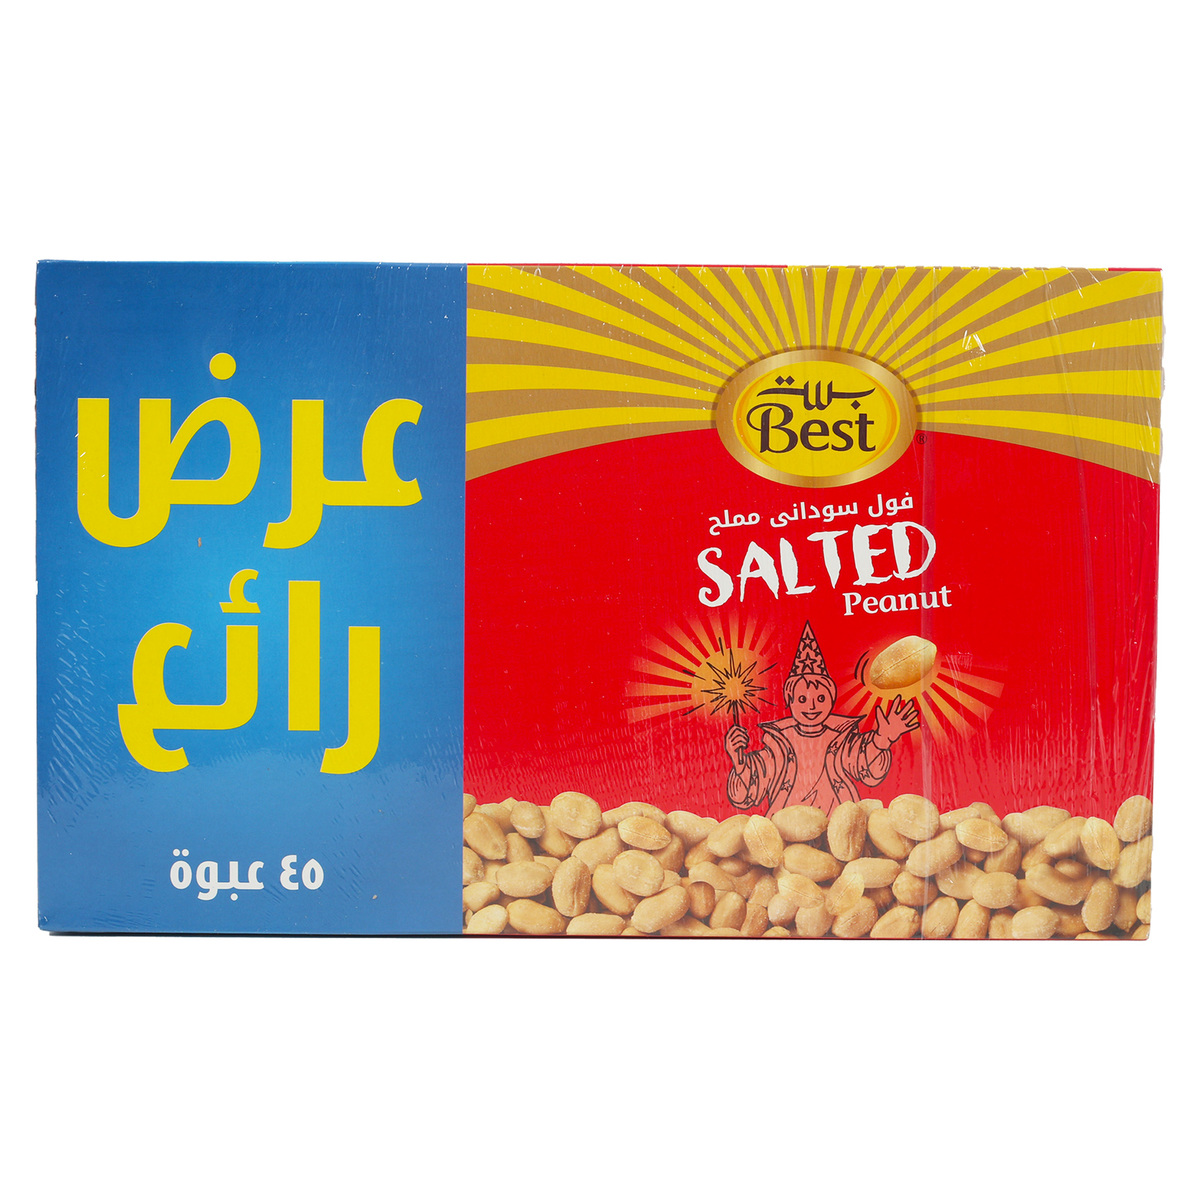 Best Salted Peanut 45 x 13 g